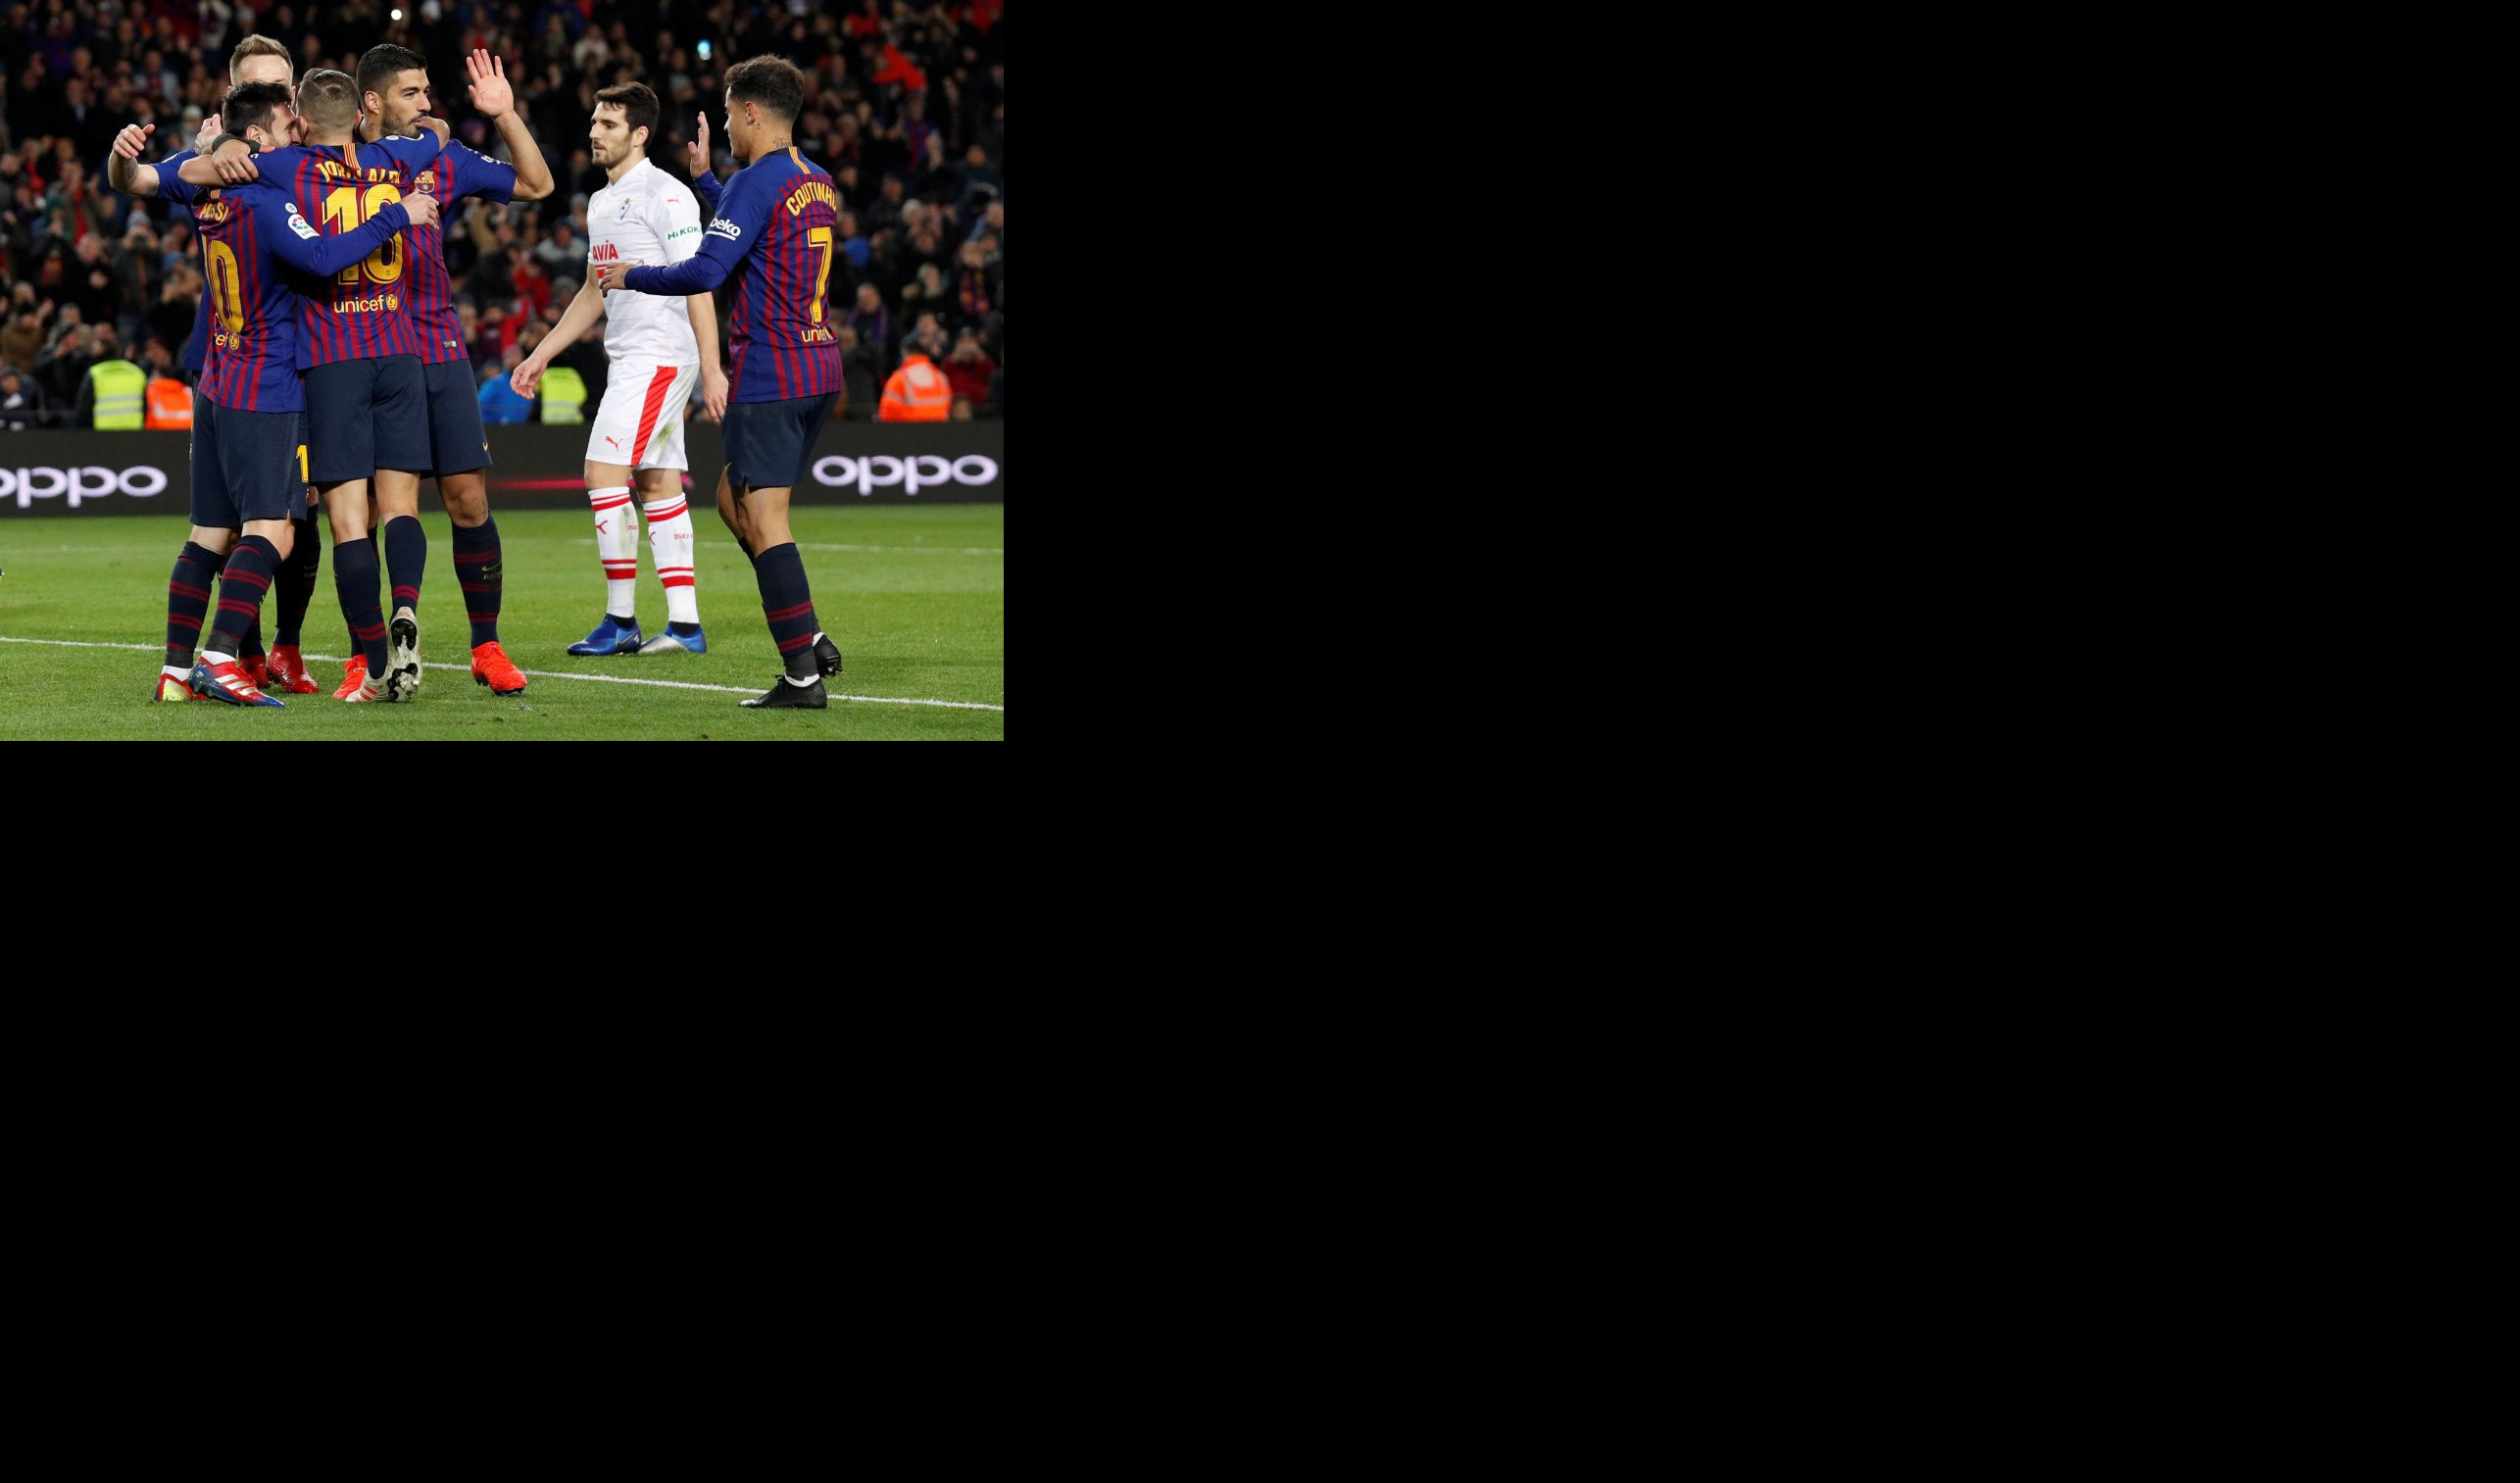 (VIDEO) MESI I SUAREZ SRUŠILI EIBAR! Barselona nastavila sa serijom pobeda u Španiji, Argentinac postigao 400. gol